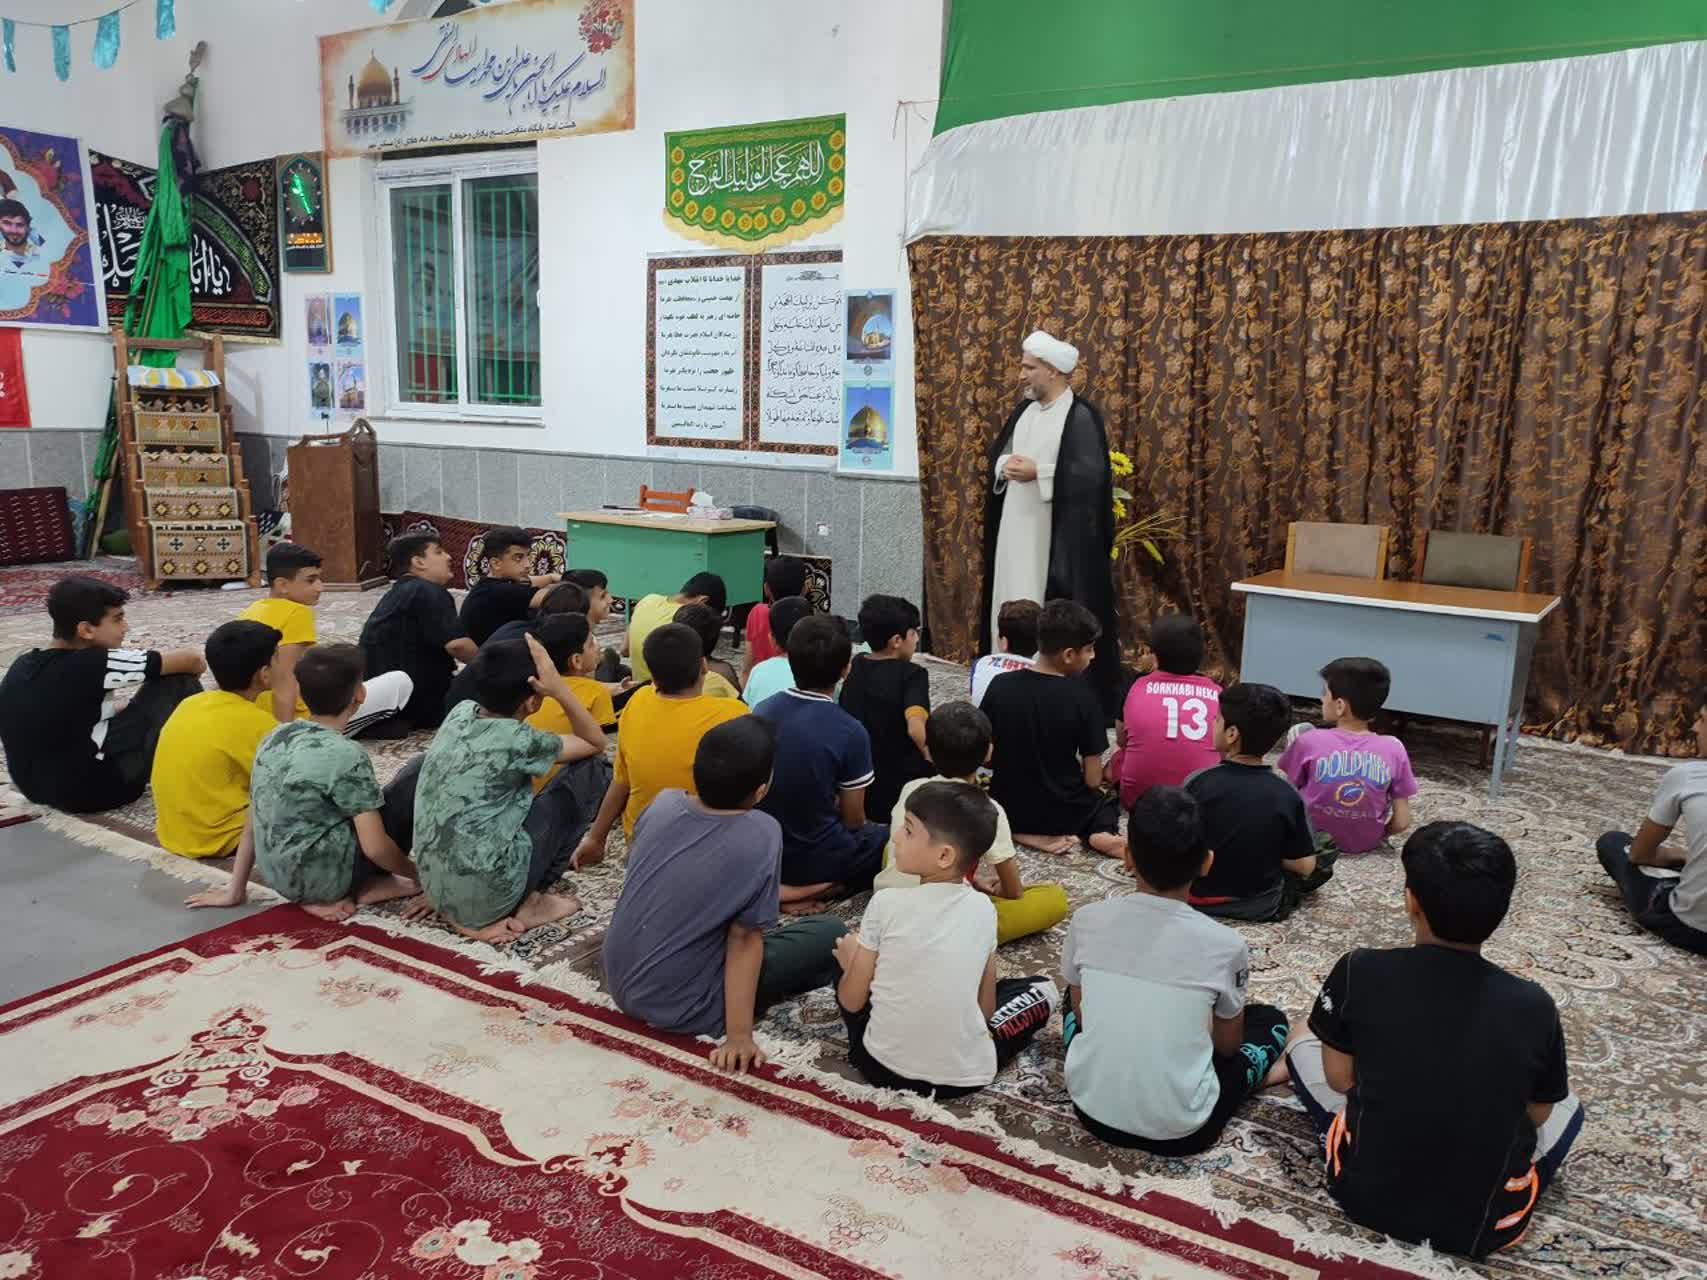 اجرای طرح اوقات فراغت در کانون فرهنگی انصارالمهدی نکا باحضور ۱۰۰ بچه مسجدی